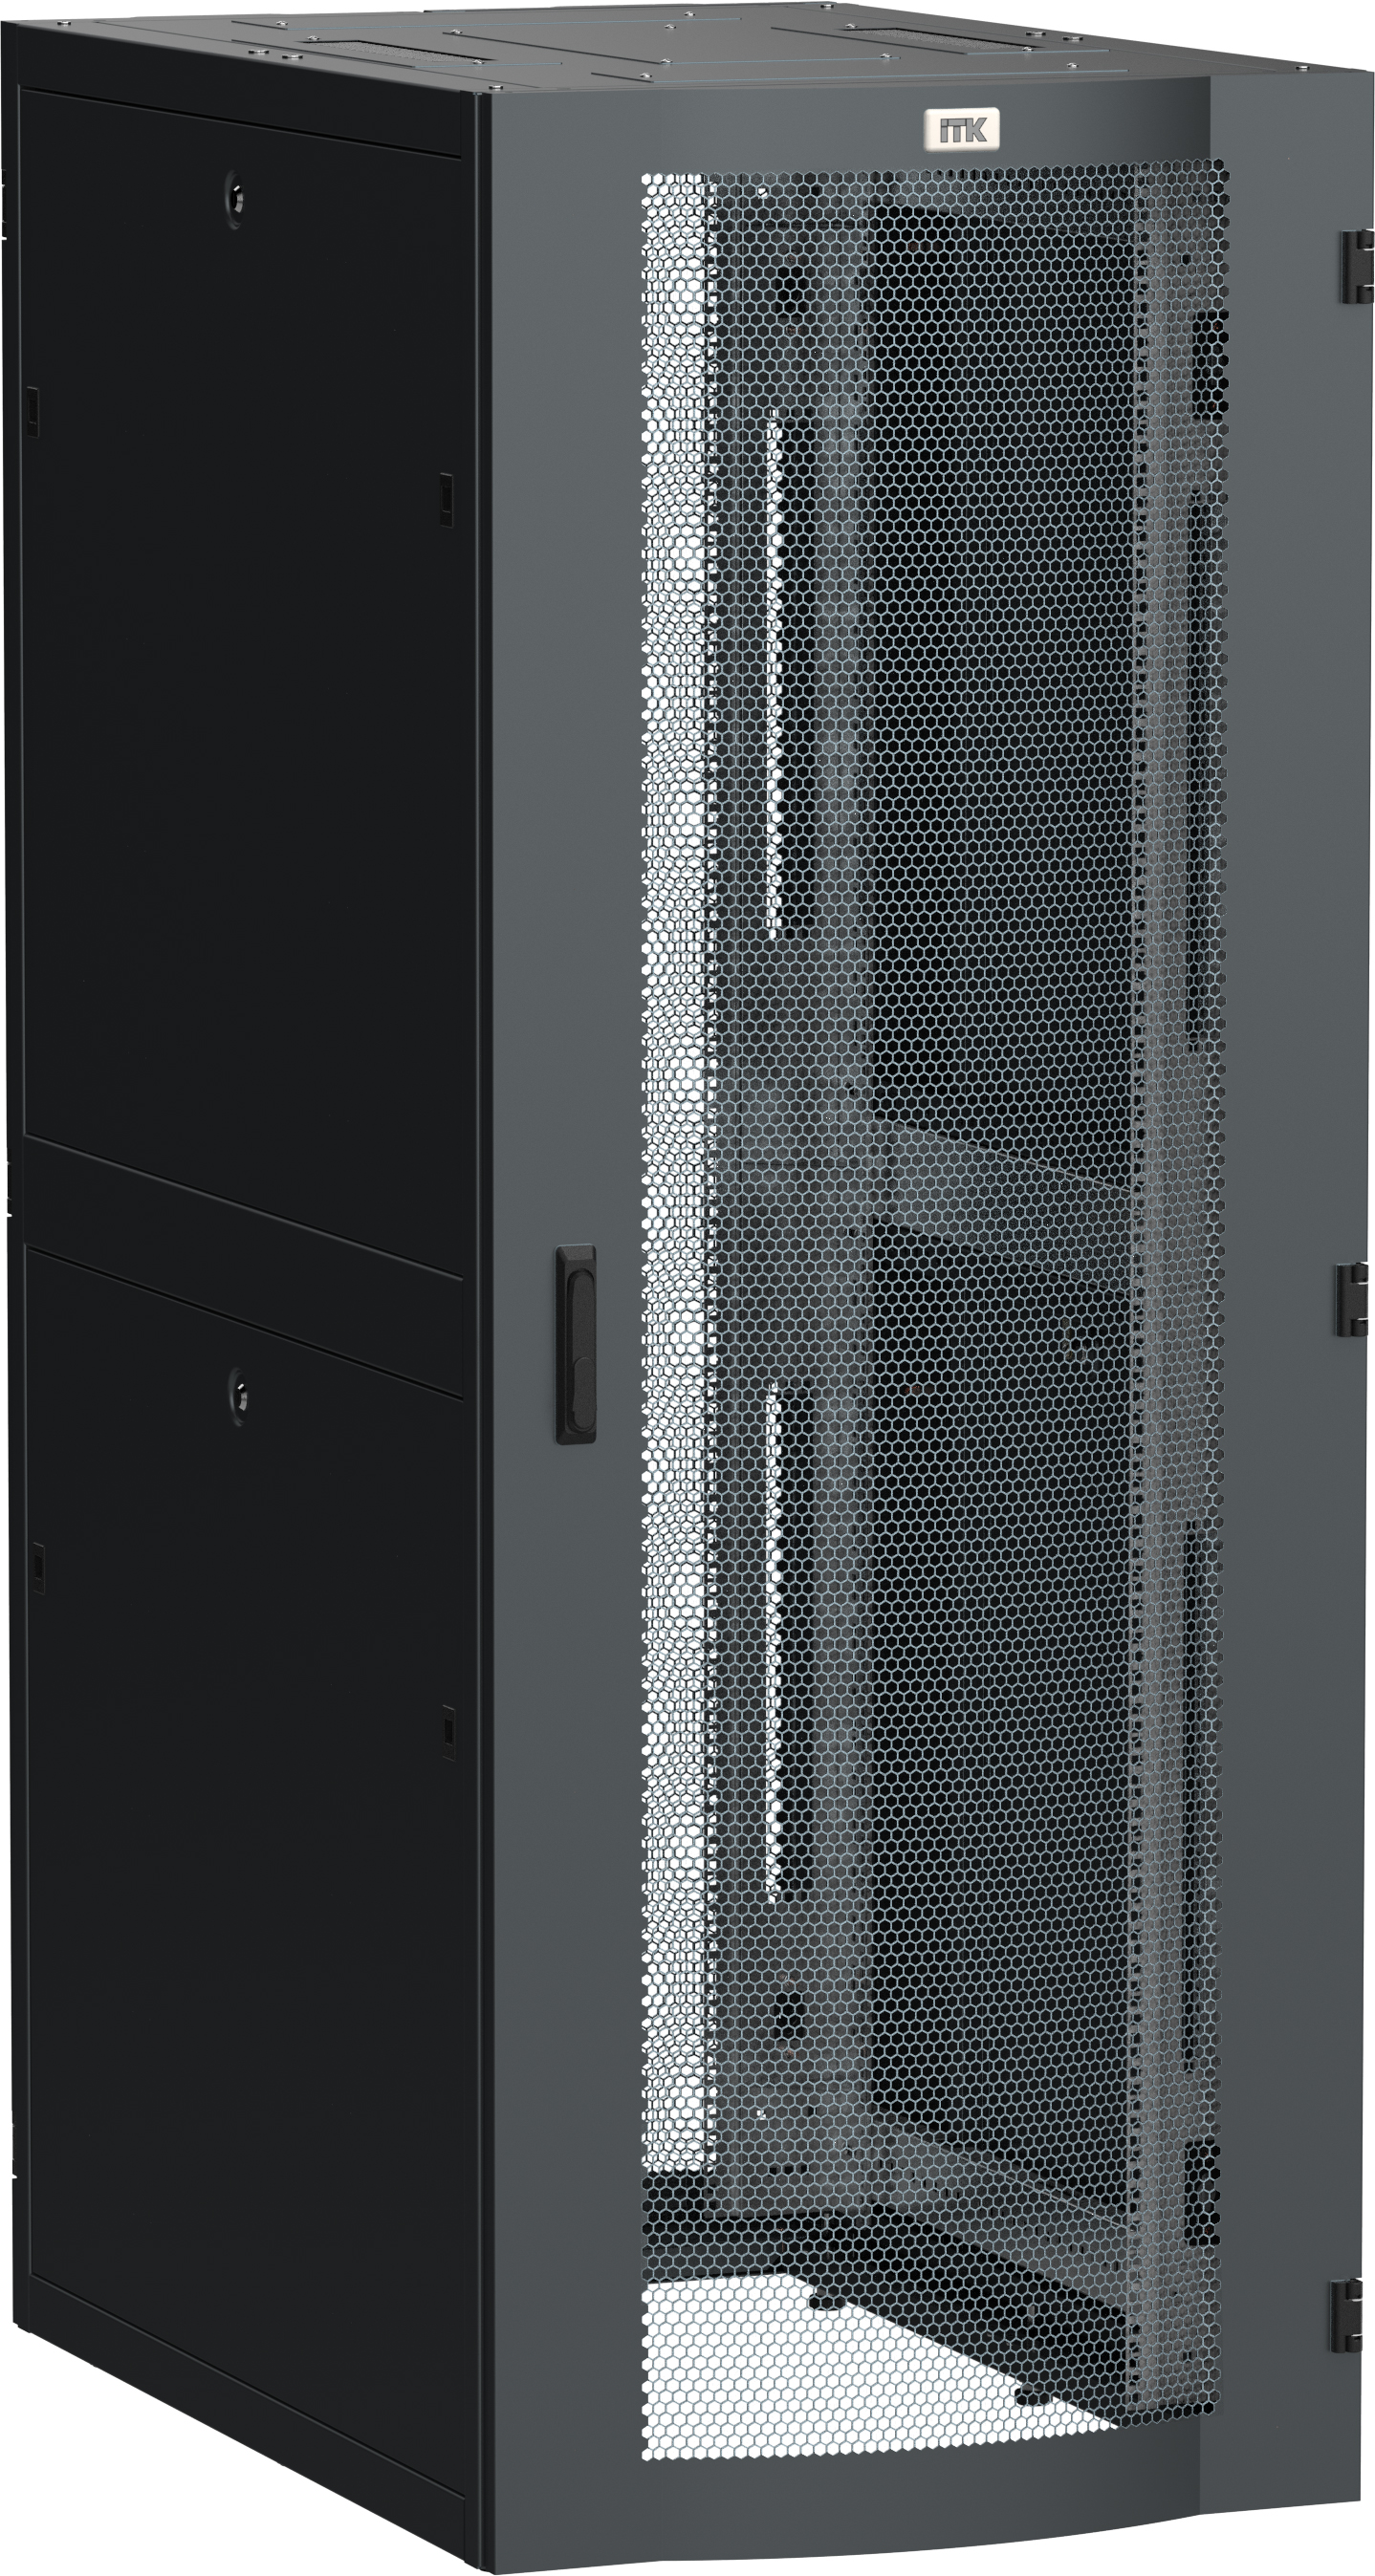 ITK LINEA S Шкаф серверный 19" 45U 750х1200мм передняя дверь двухстворчатая перфорированная задняя дверь перфорированная черный RAL 9005